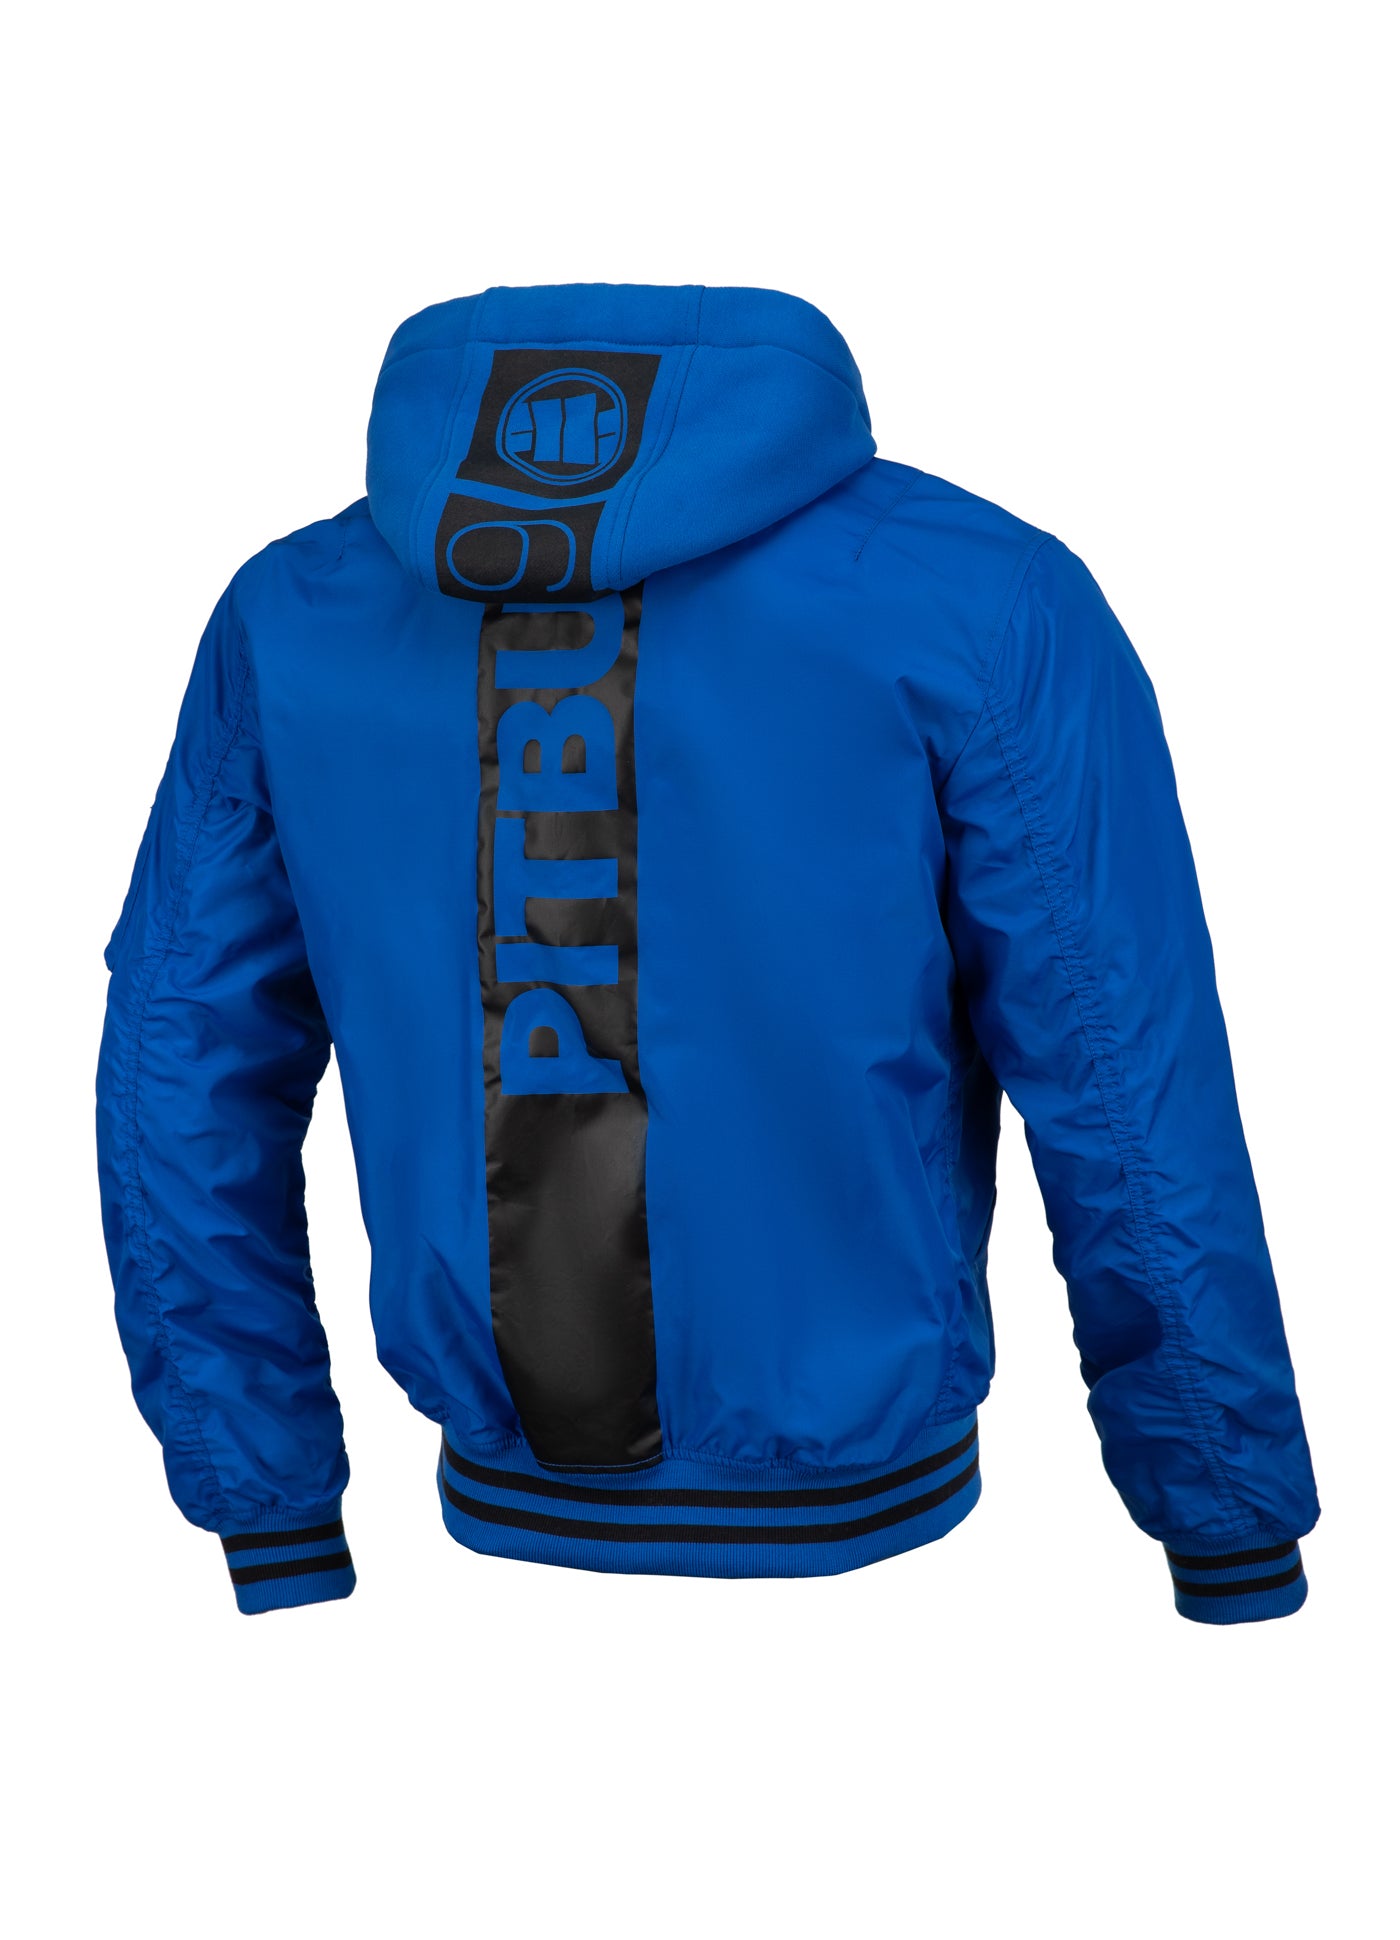 Jacket NIMITZ Royal Blue - Pitbullstore.eu